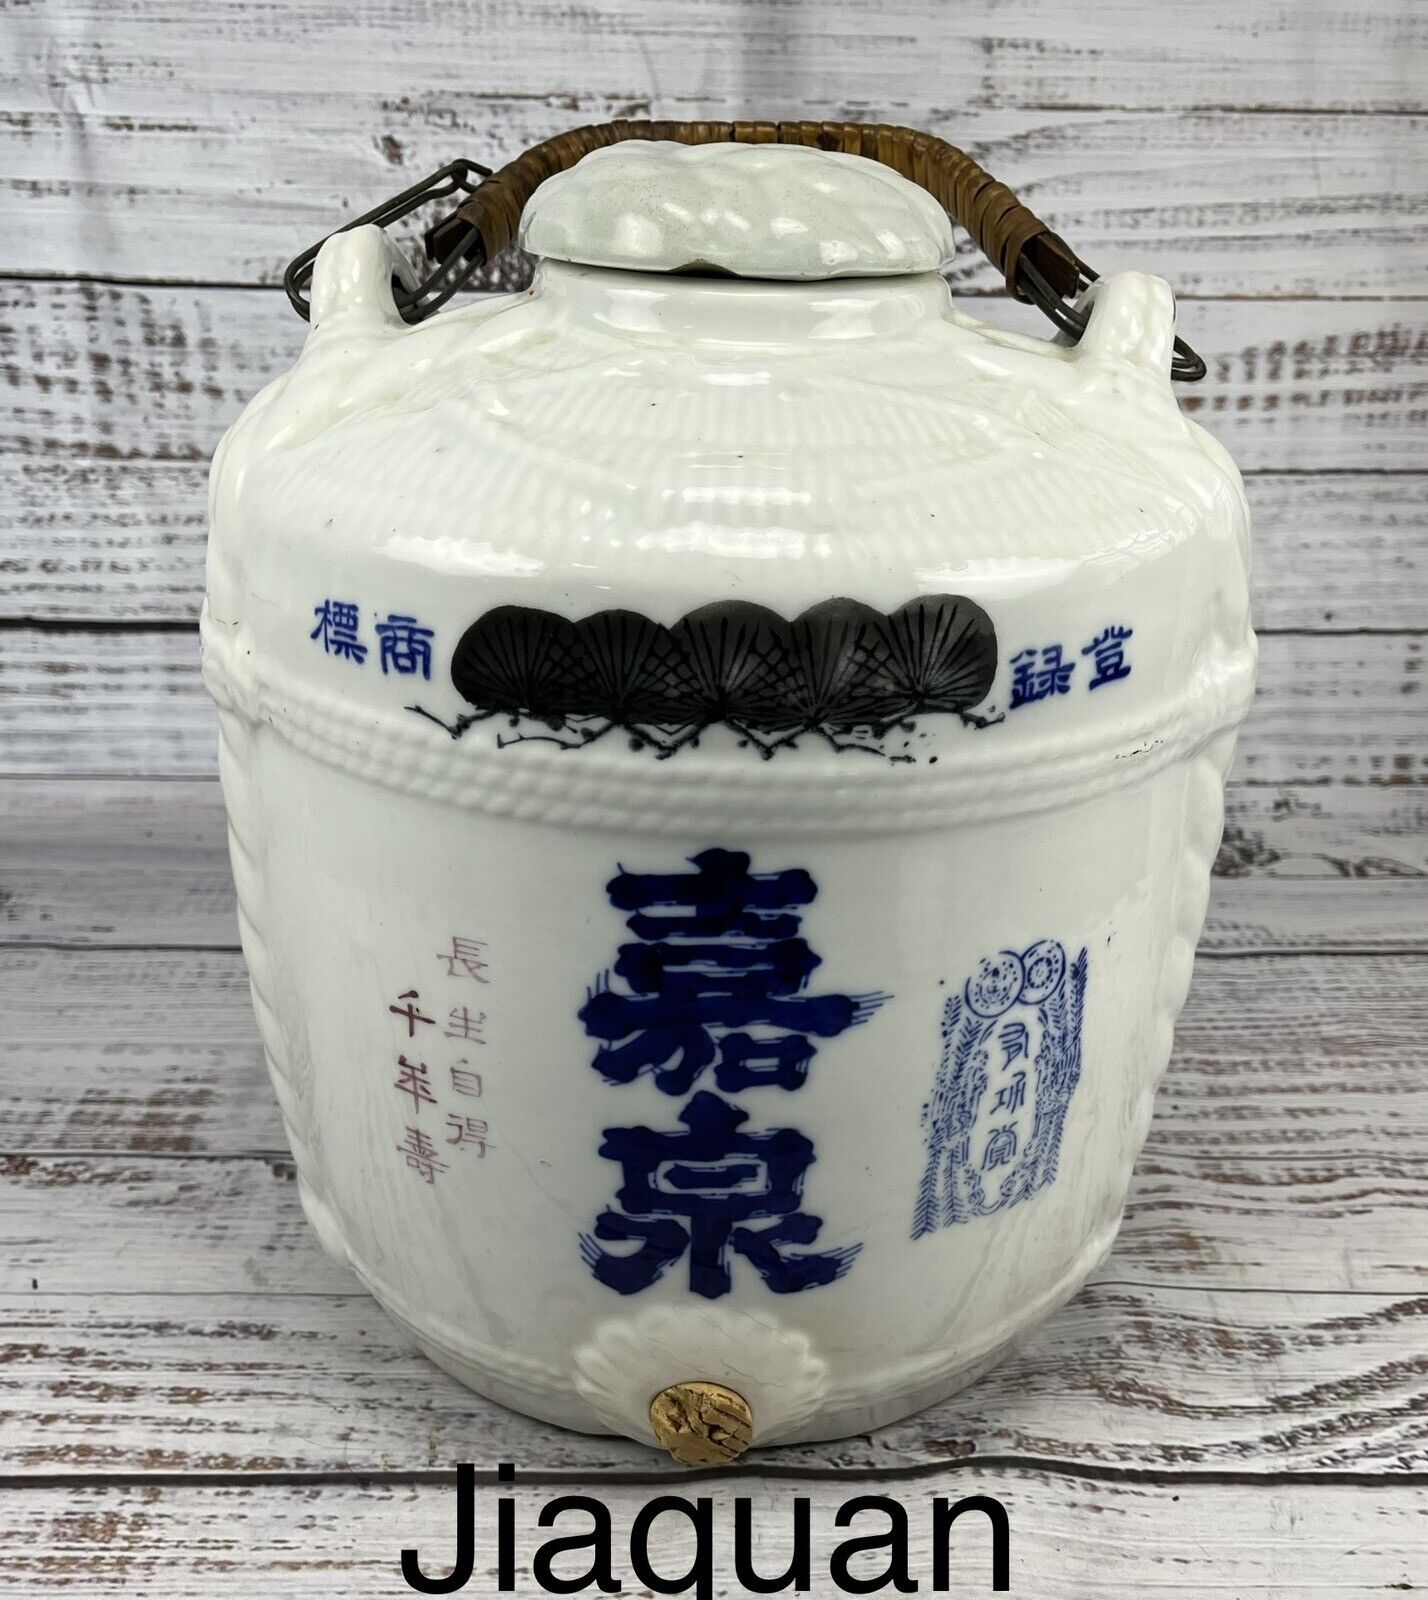 Large Circa 19th Century Japanese Ceramic Sake Daru Barrel Jug  12” By 10”